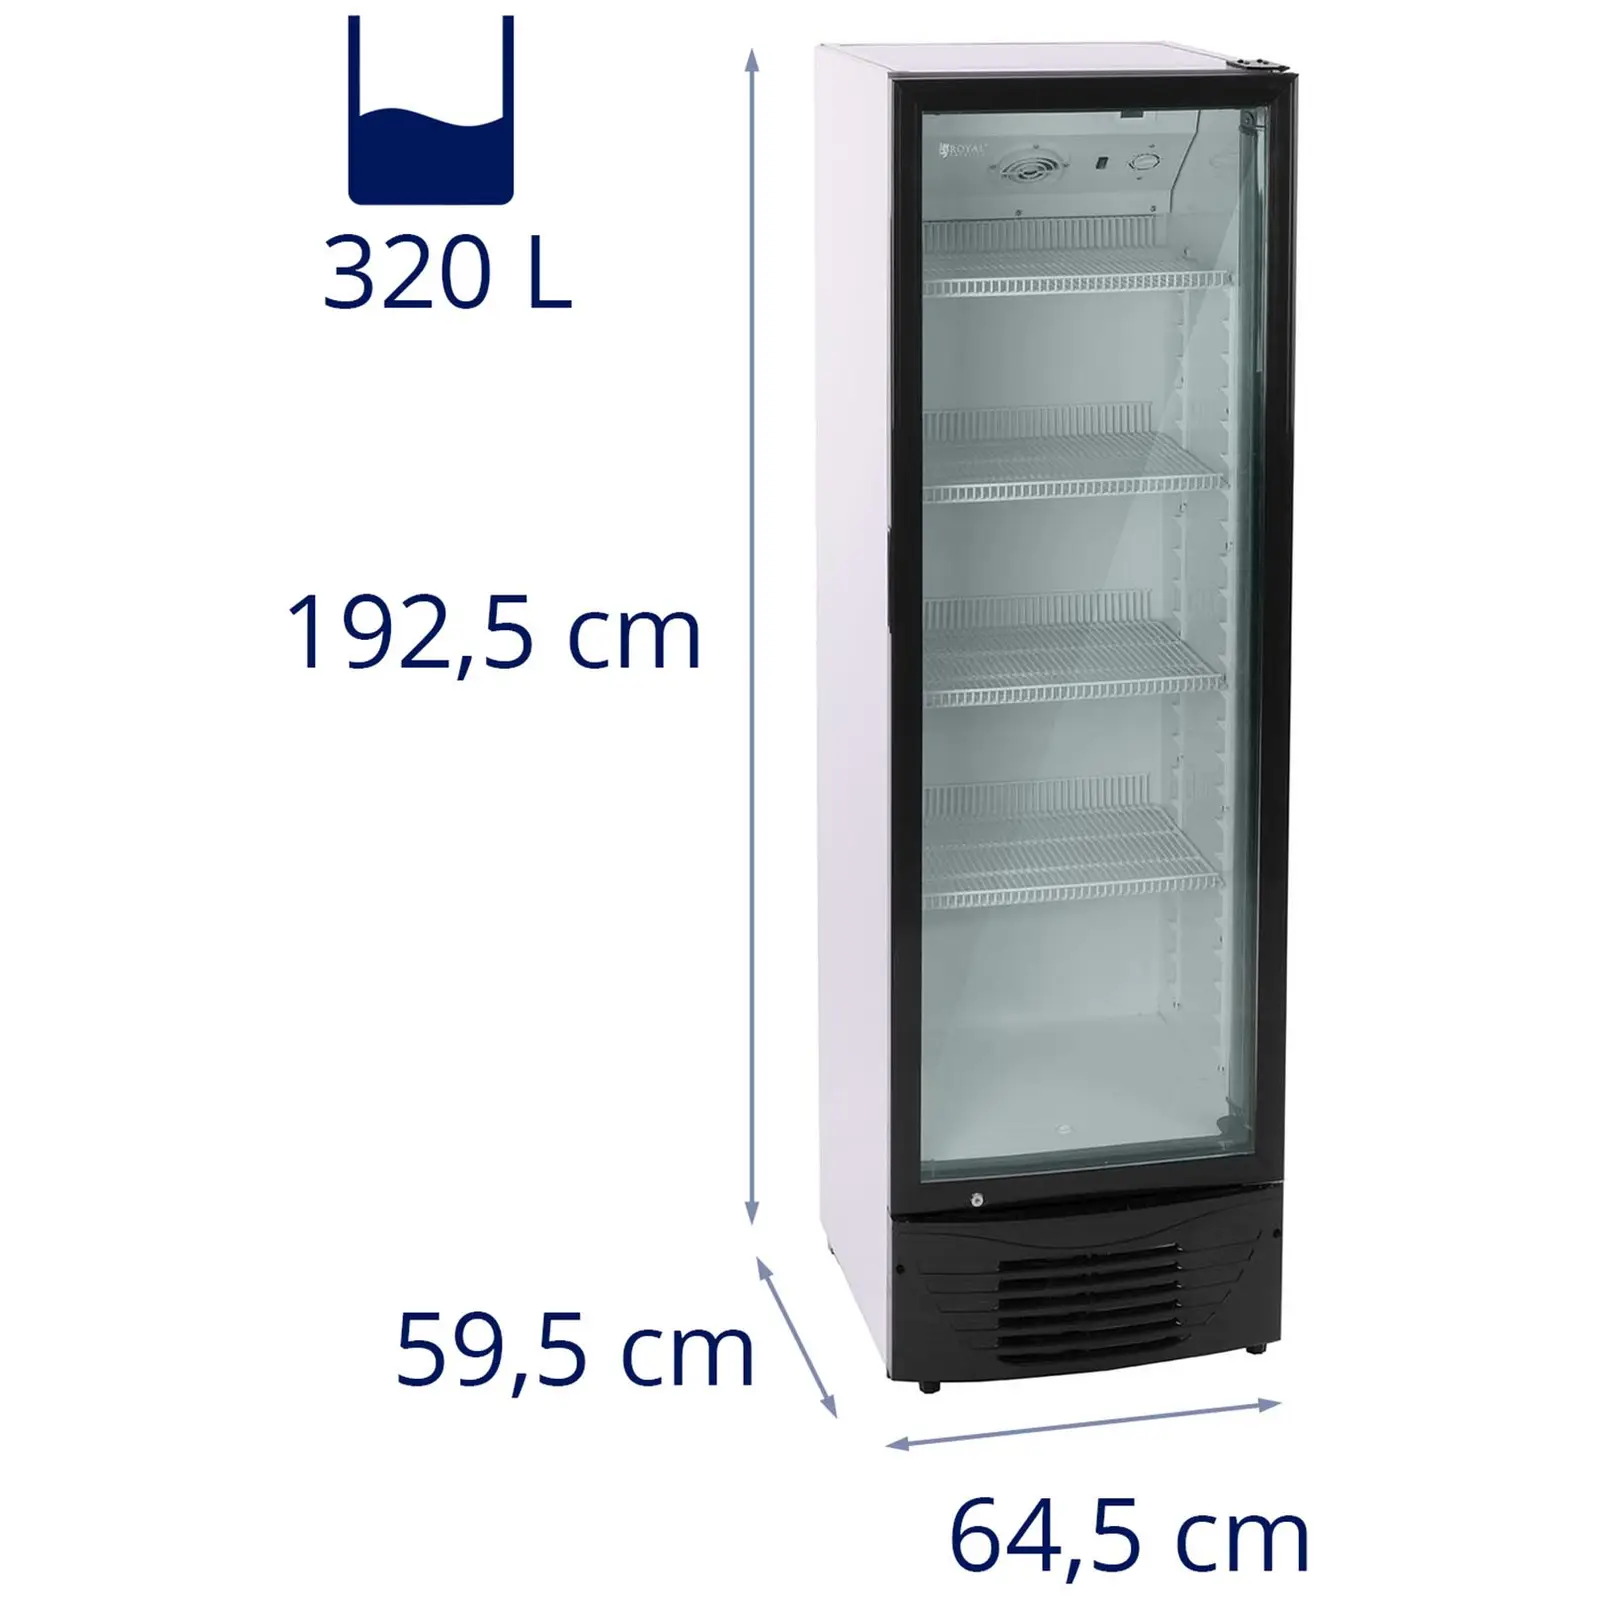 Arca refrigeradora comercial - 320 L - LED - Armação preta